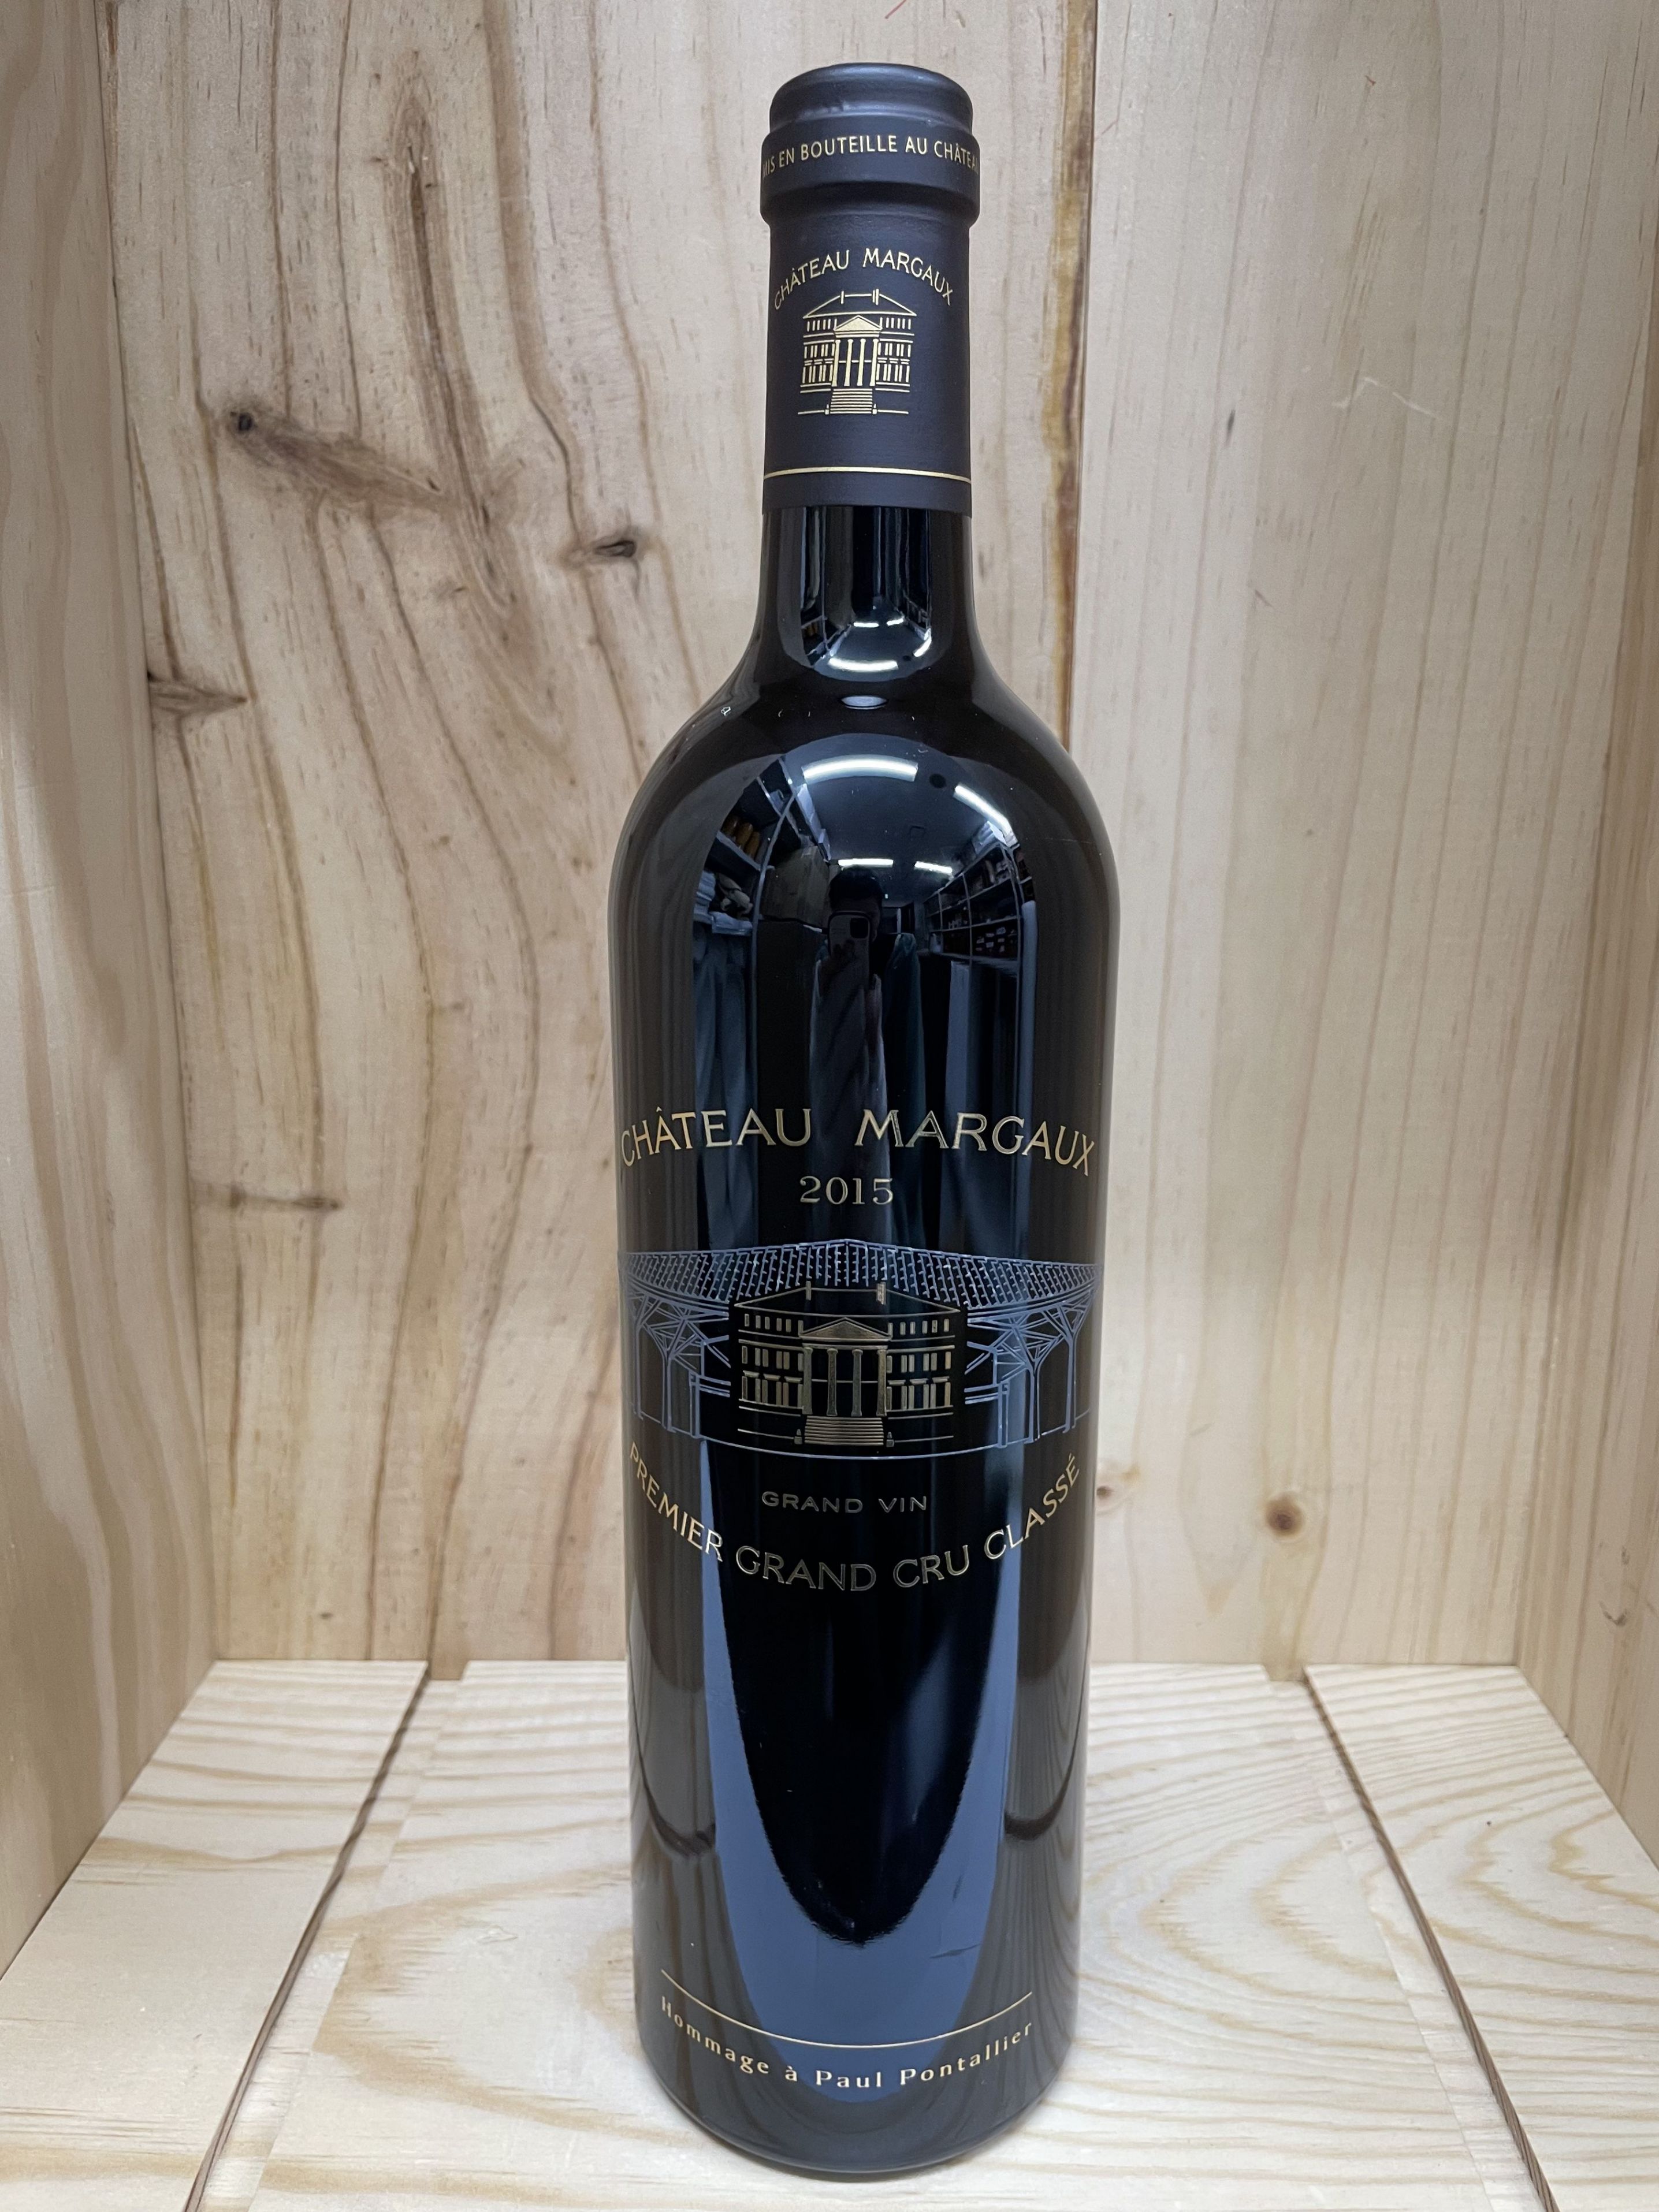 2015 シャトー マルゴー Chateau Margaux フランス ボルドー 赤ワイン 750ml